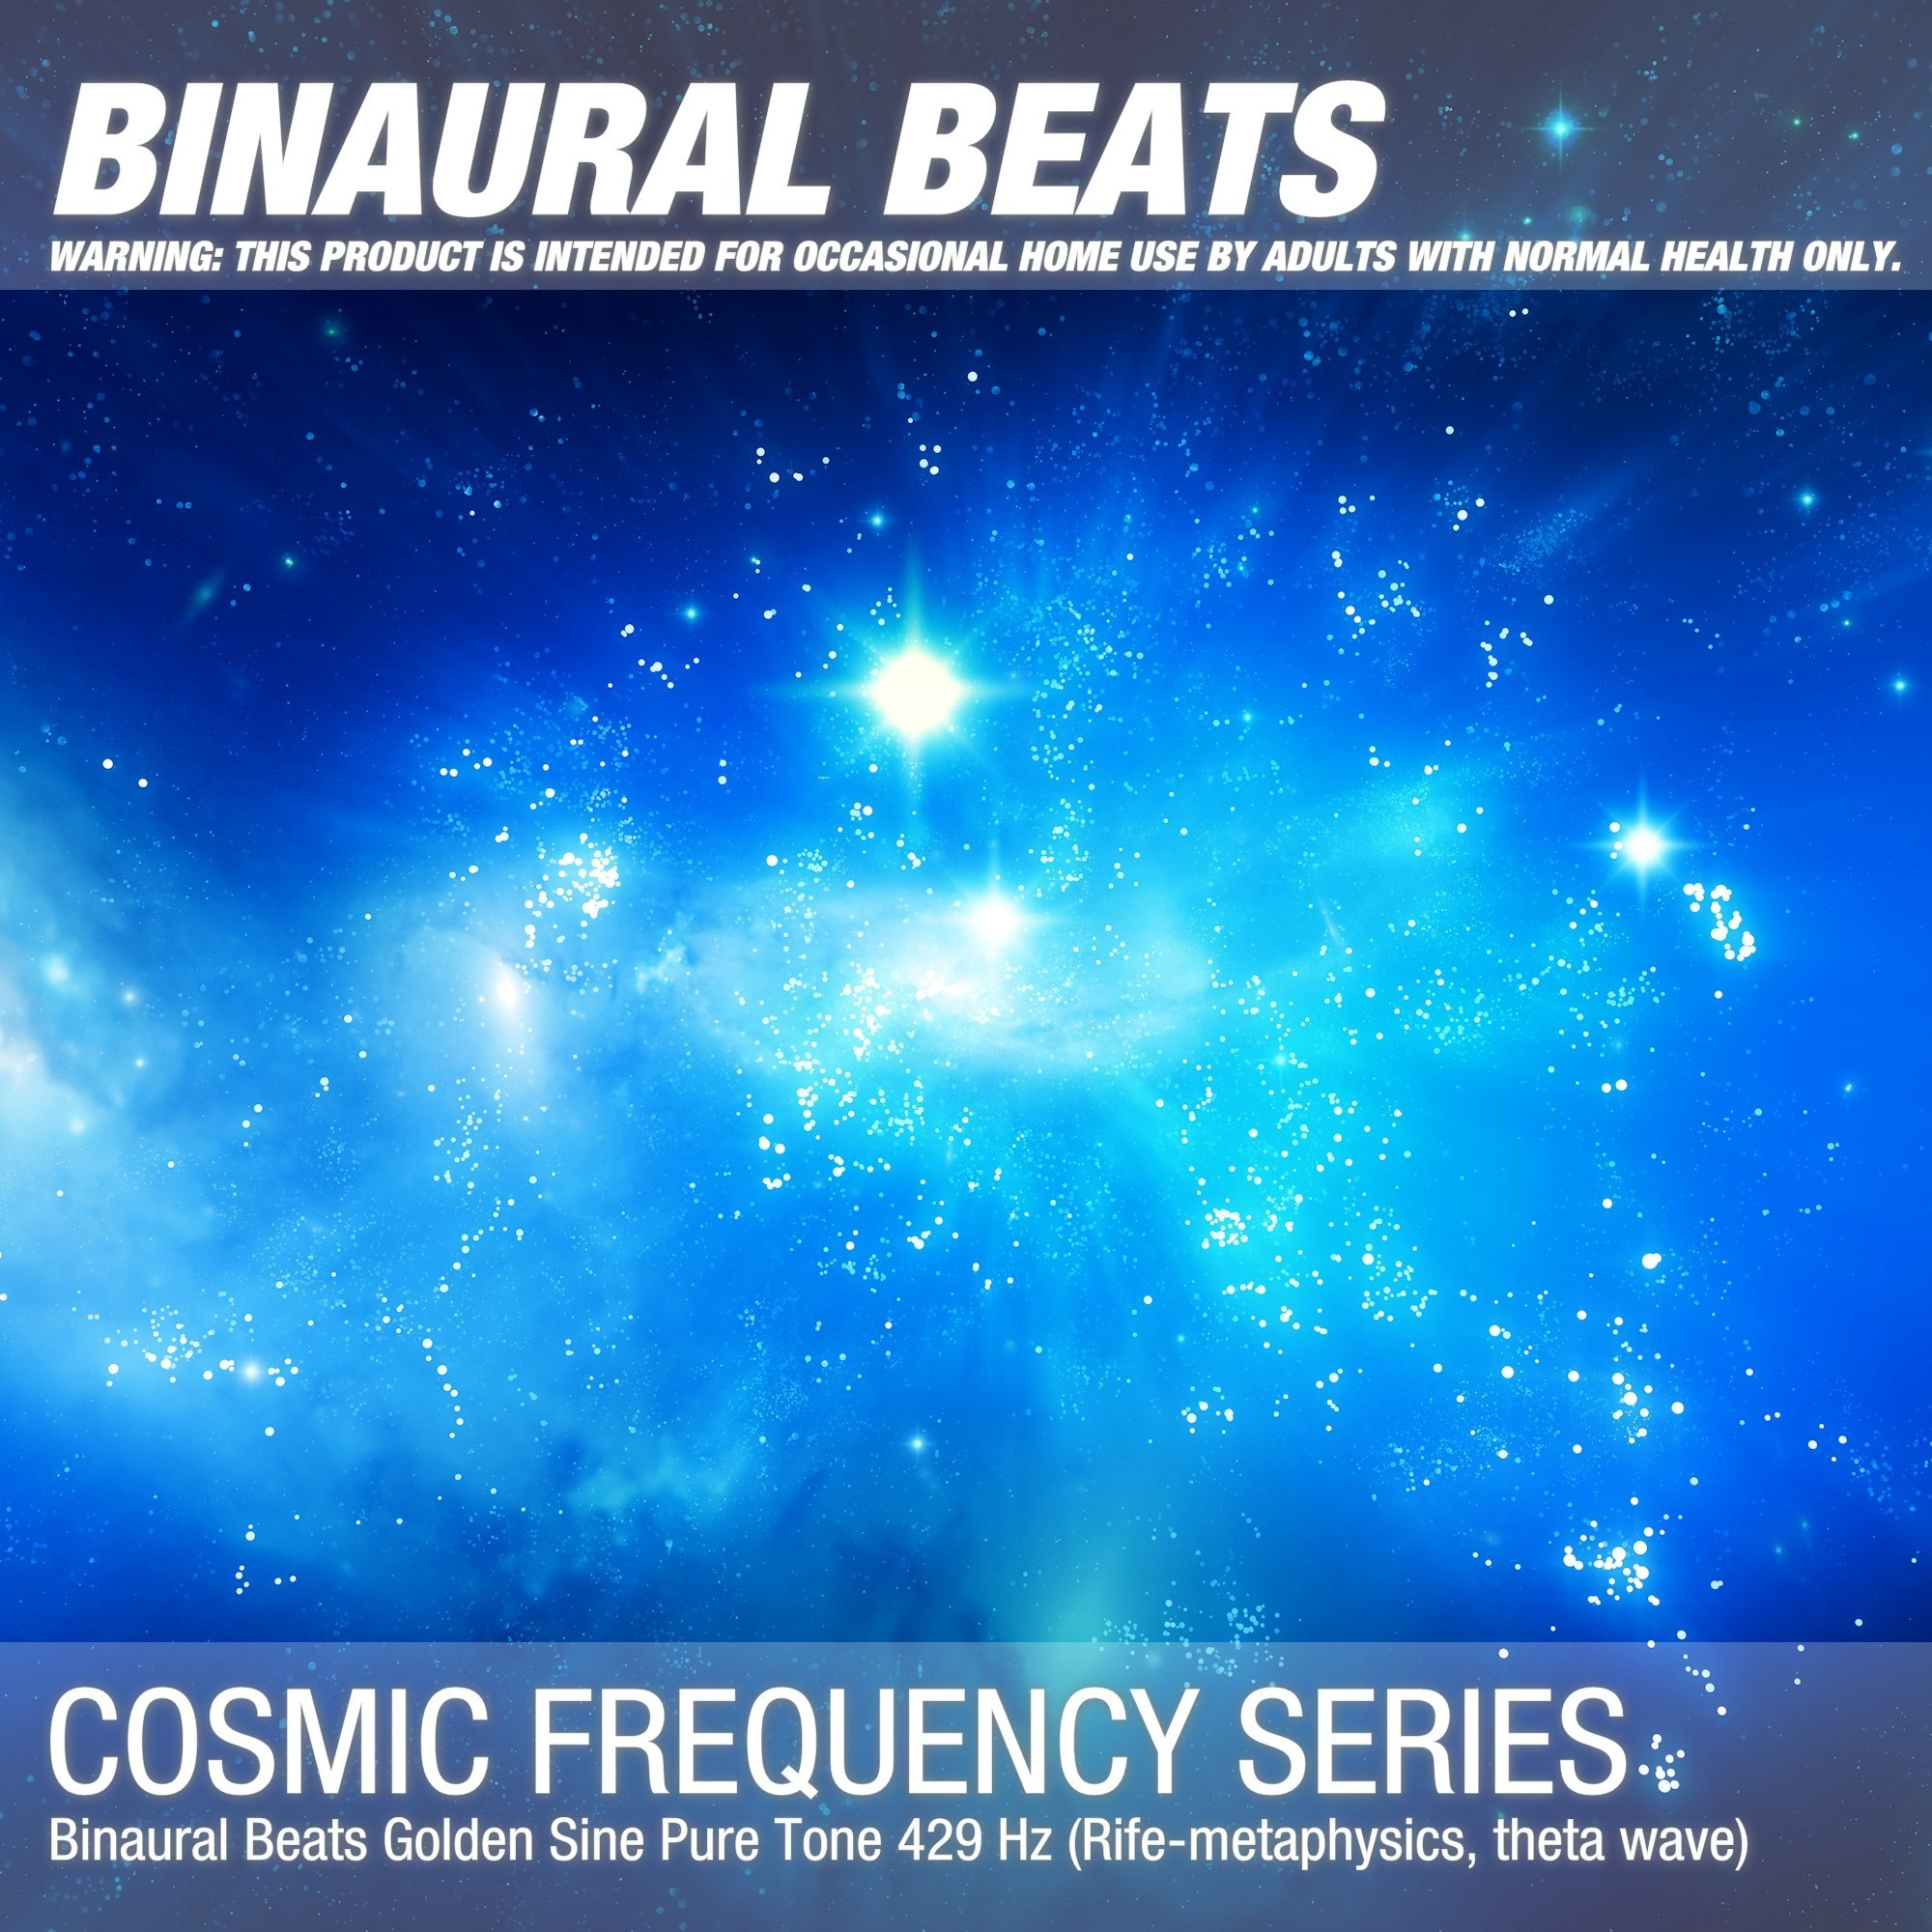 Binaural Beats Golden Sine Pure Tone 429 Hz (Rife-metaphysics, theta wave)